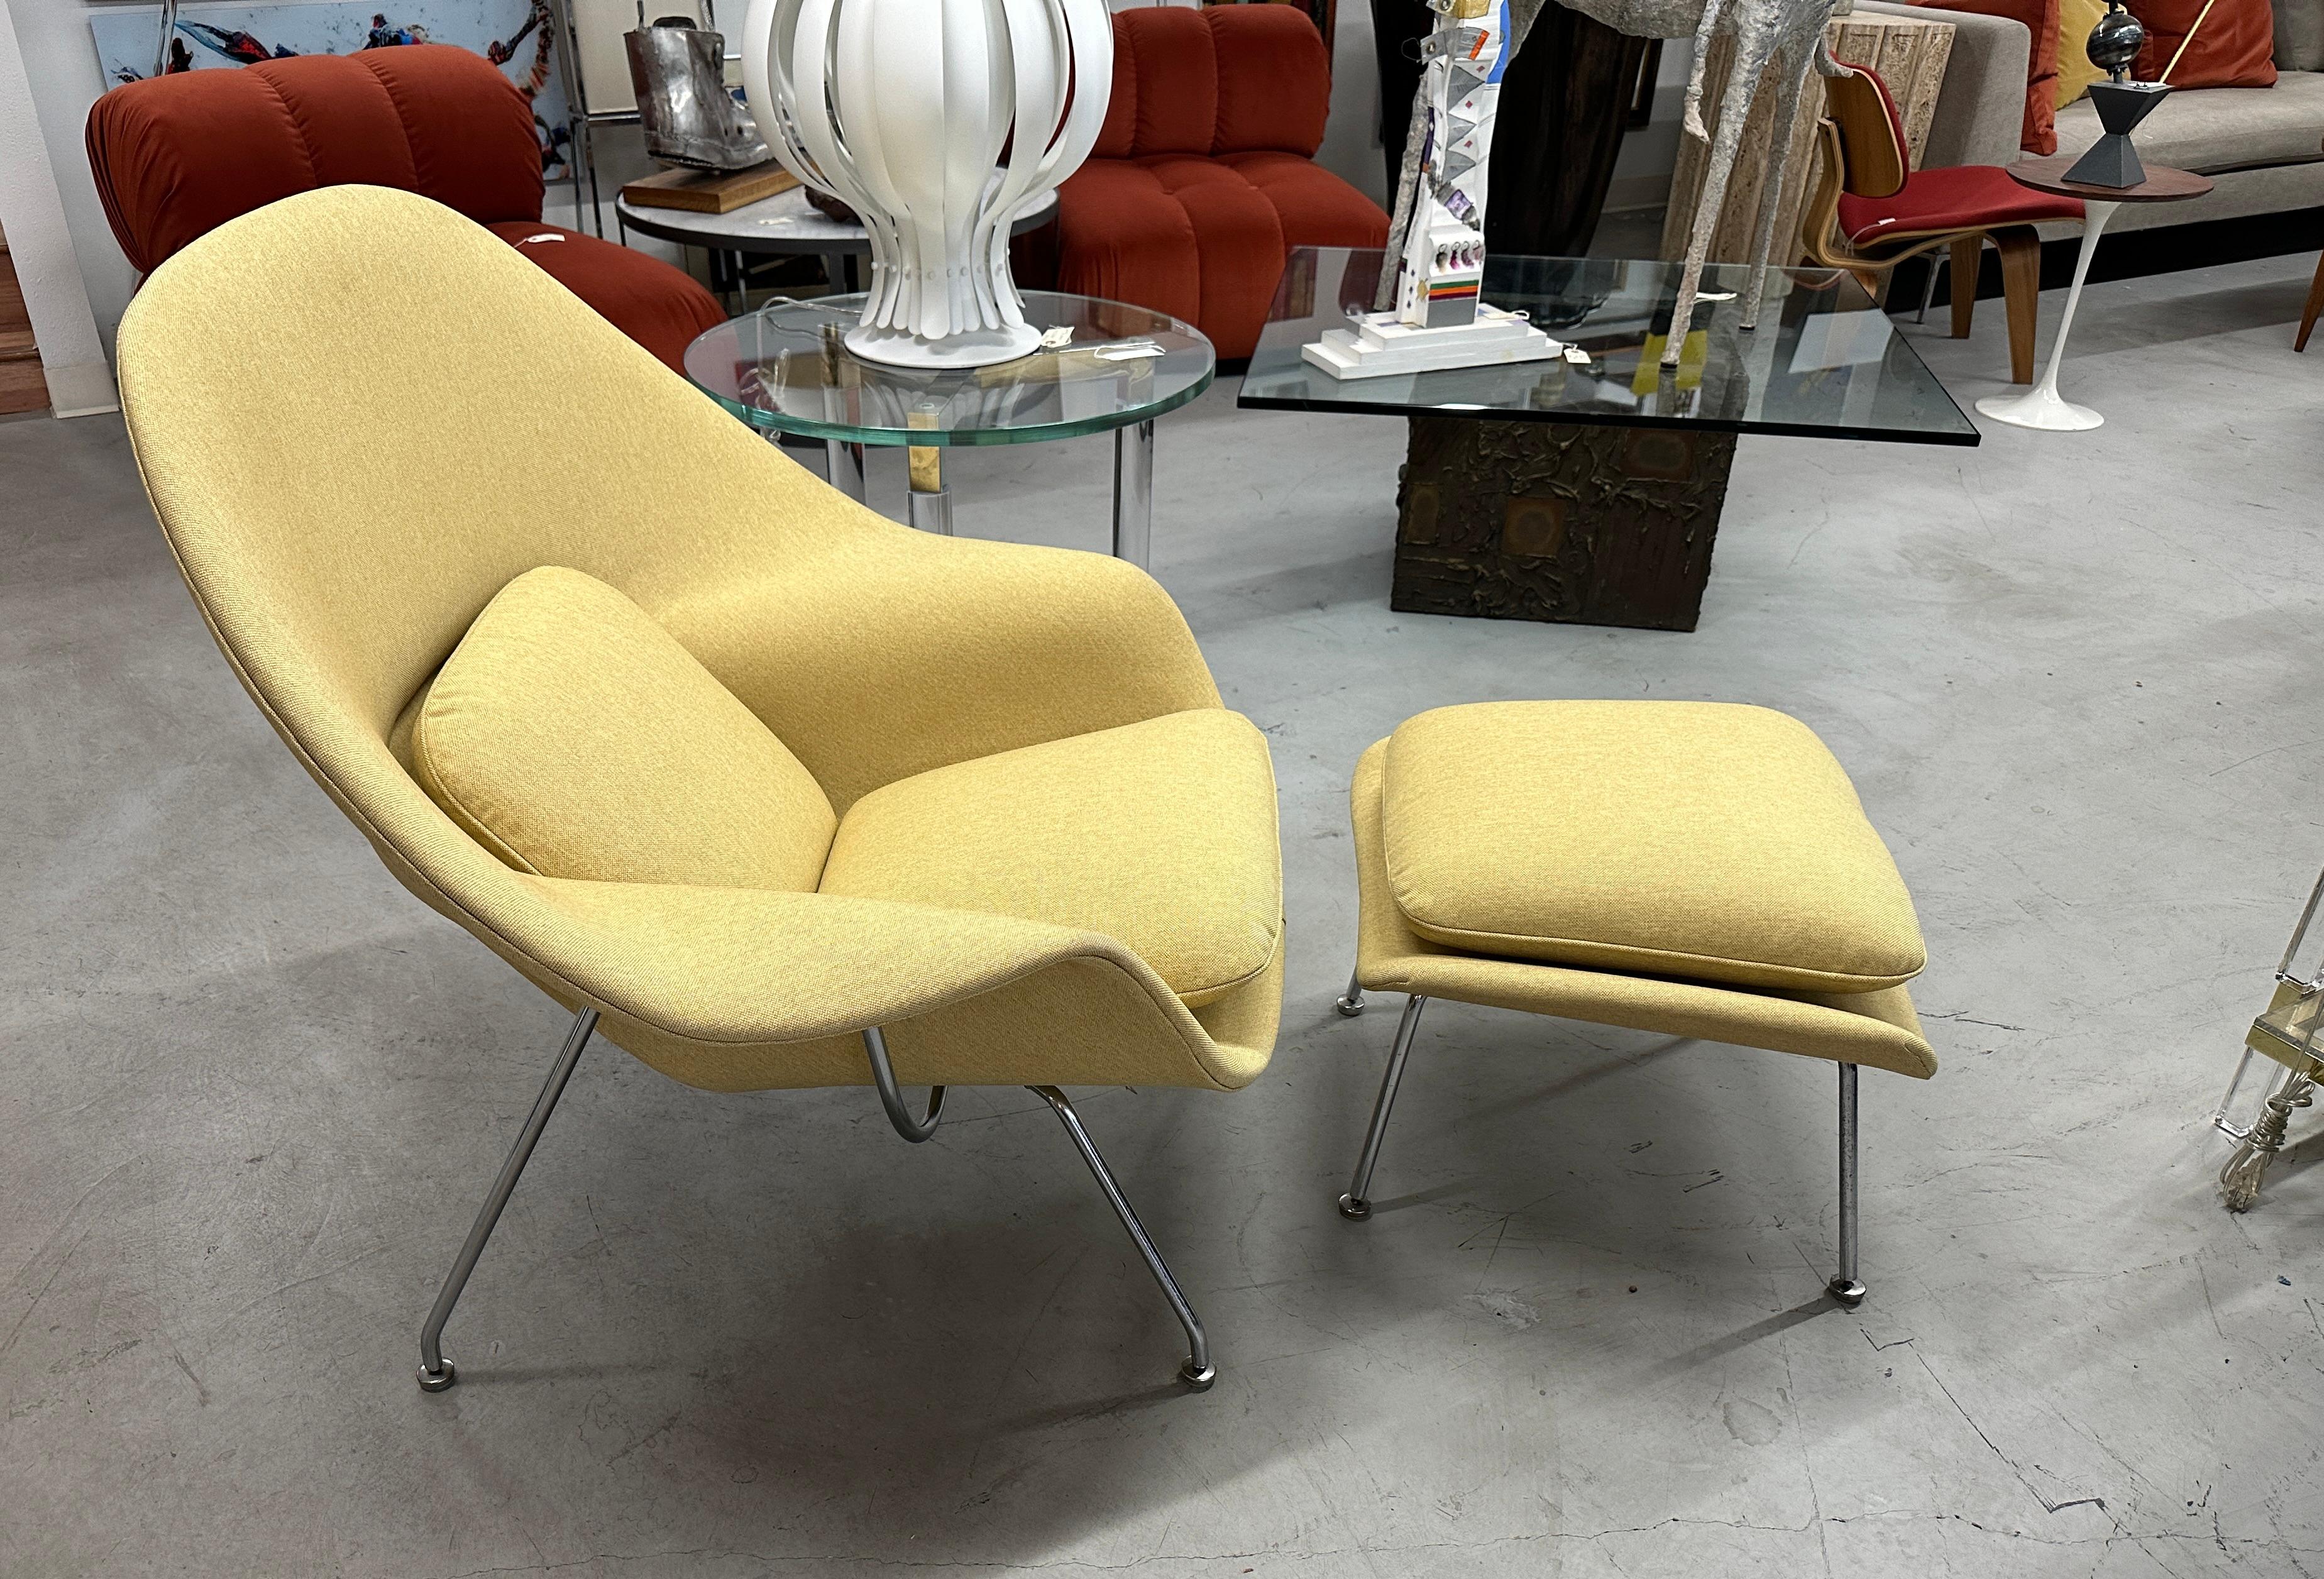 Ein schönes Beispiel für den ikonischen Womb Chair und Ottoman, entworfen von Eero Saarinen für Knoll. Wir haben ihn mit einem echten Knoll-Stoff, Crossroads in der Farbe Honey Bee, neu gepolstert. Der Stoff besteht aus 43% Polyester, 37% Post